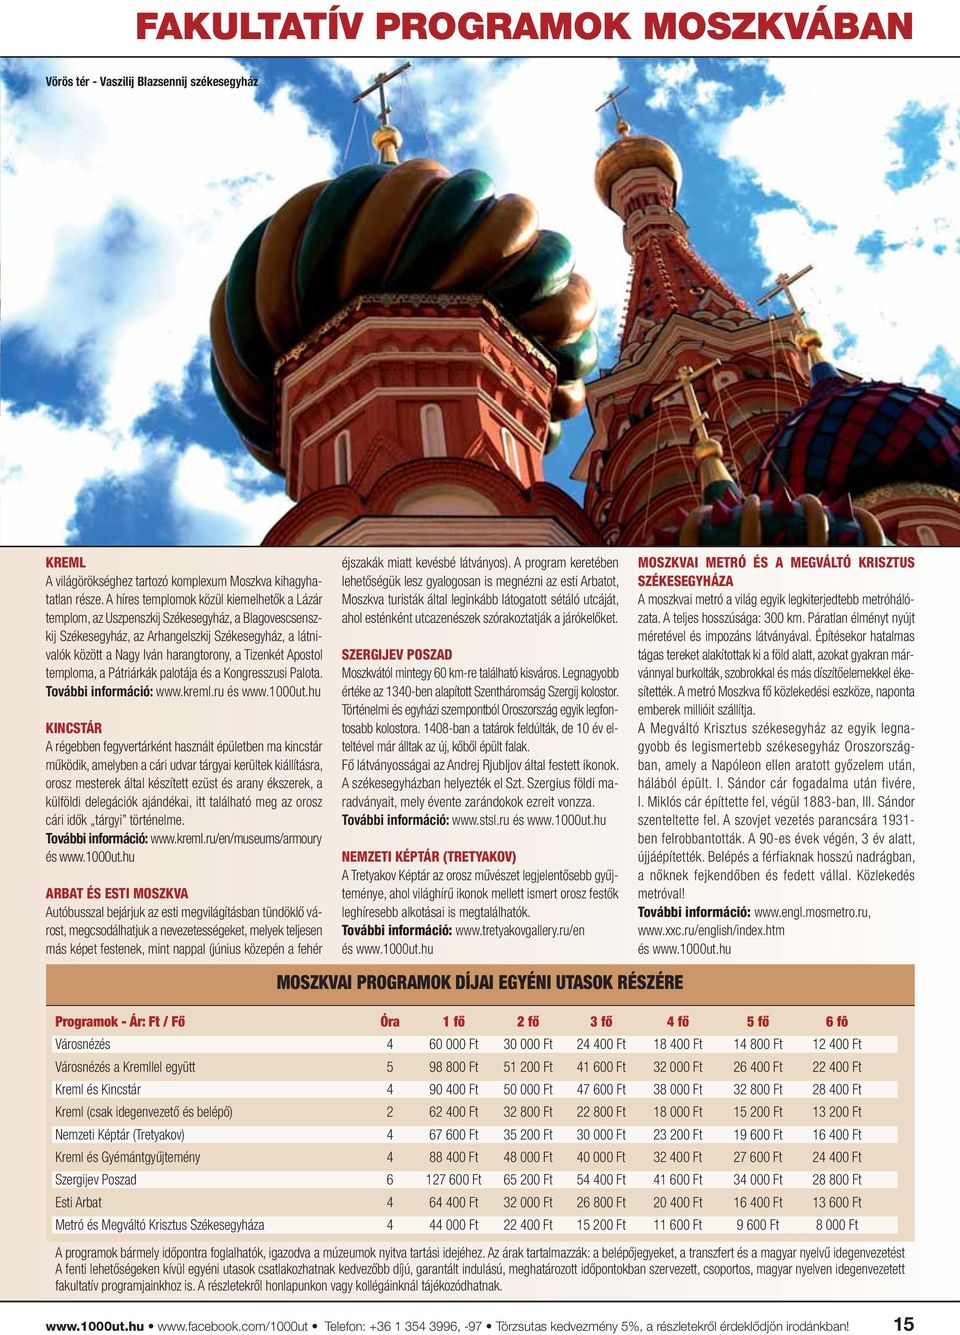 Tizenkét Apostol temploma, a Pátriárkák palotája és a Kongresszusi Palota. További információ: www.kreml.ru és www.1000ut.